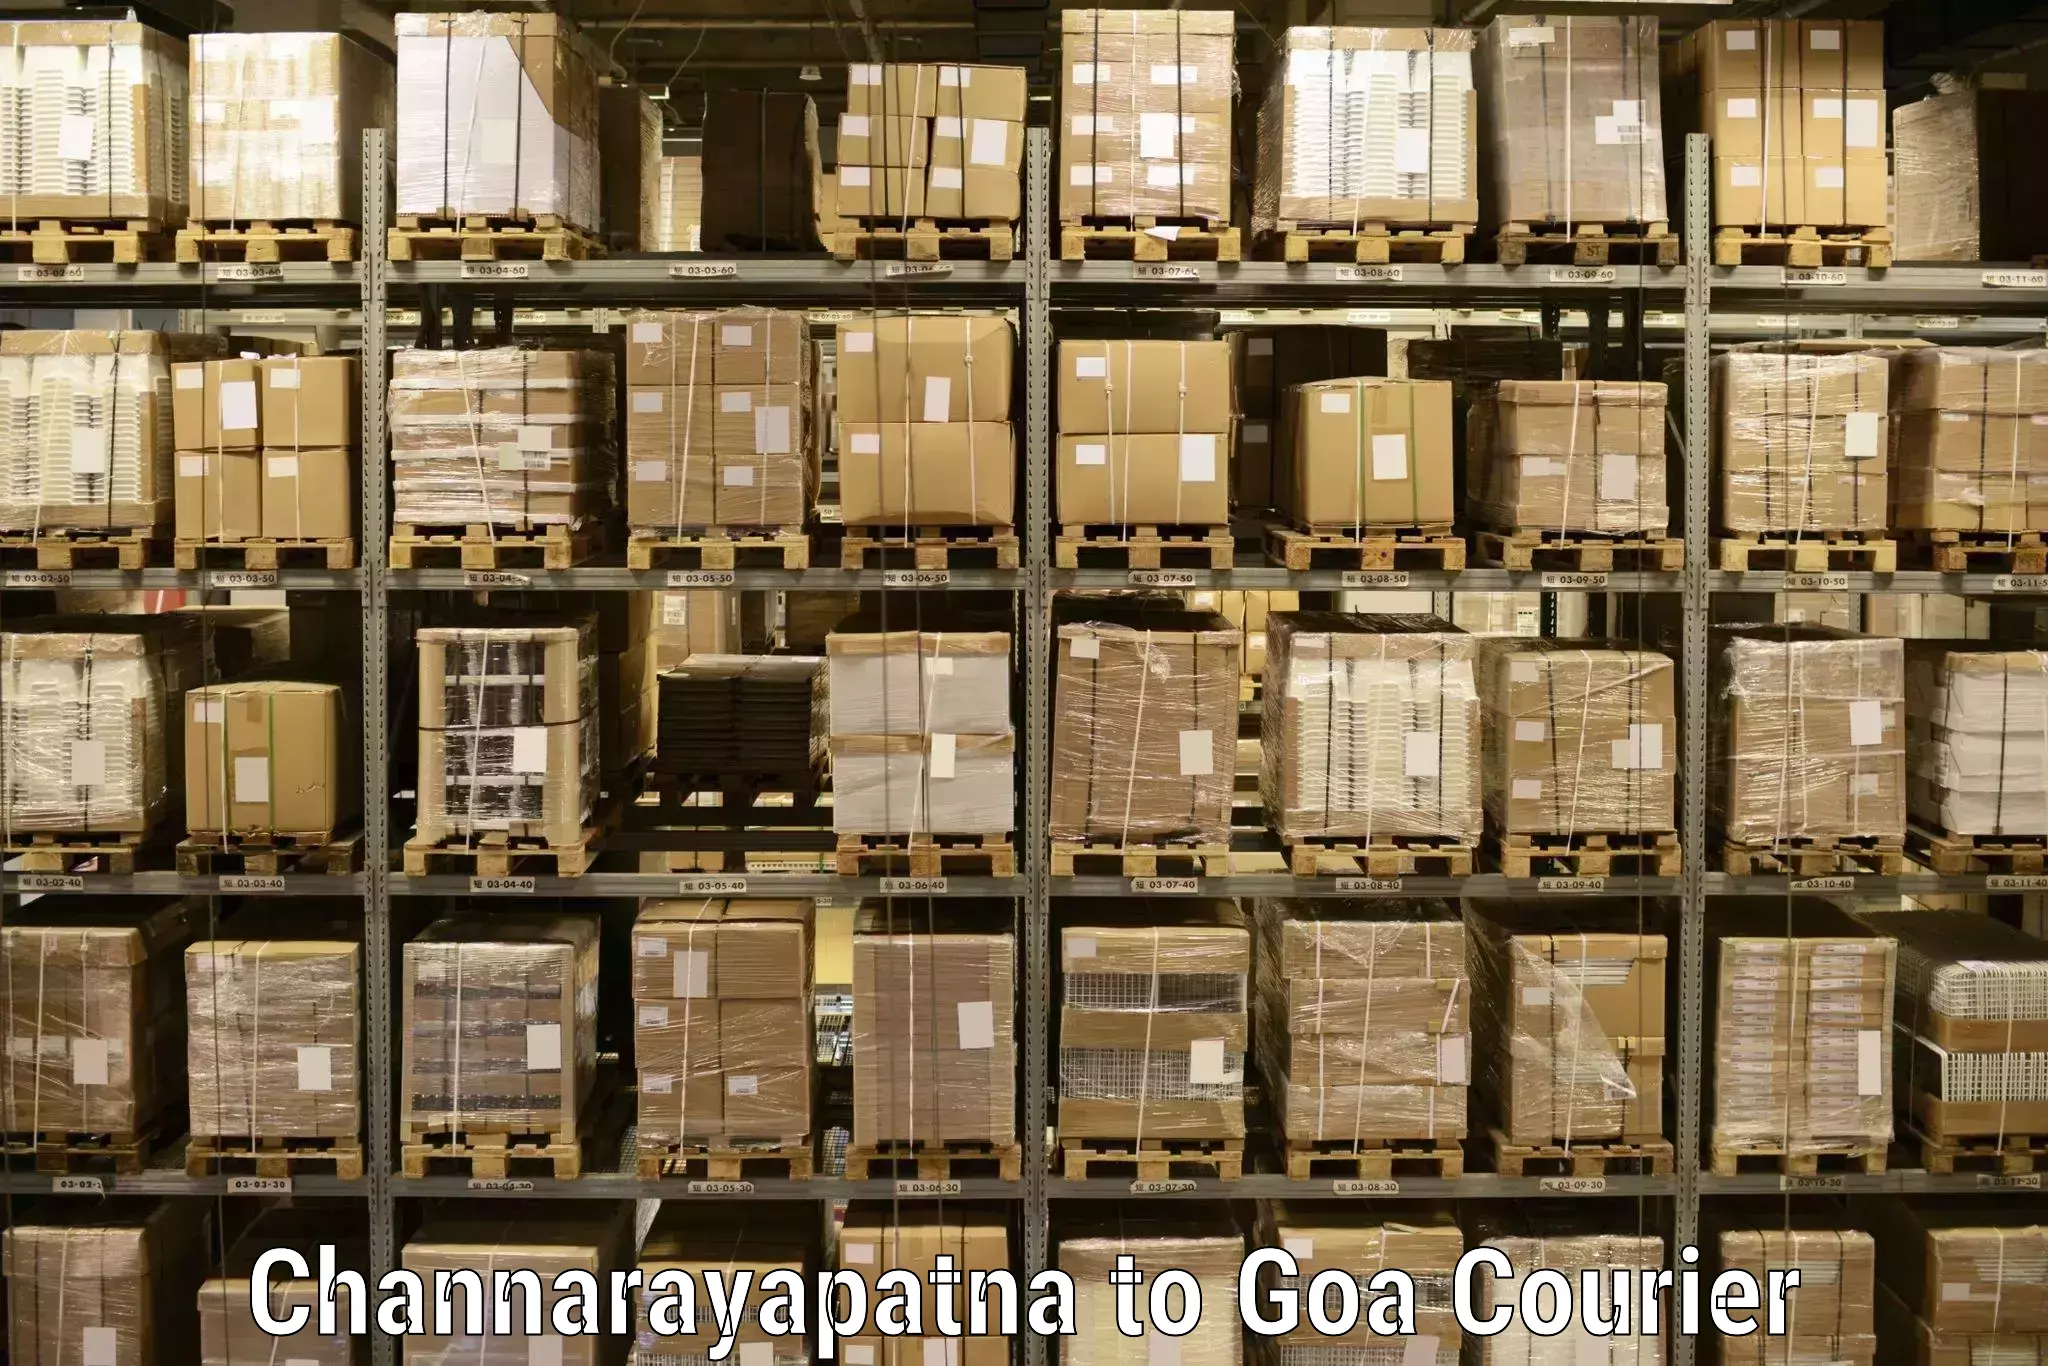 Professional courier services Channarayapatna to Canacona